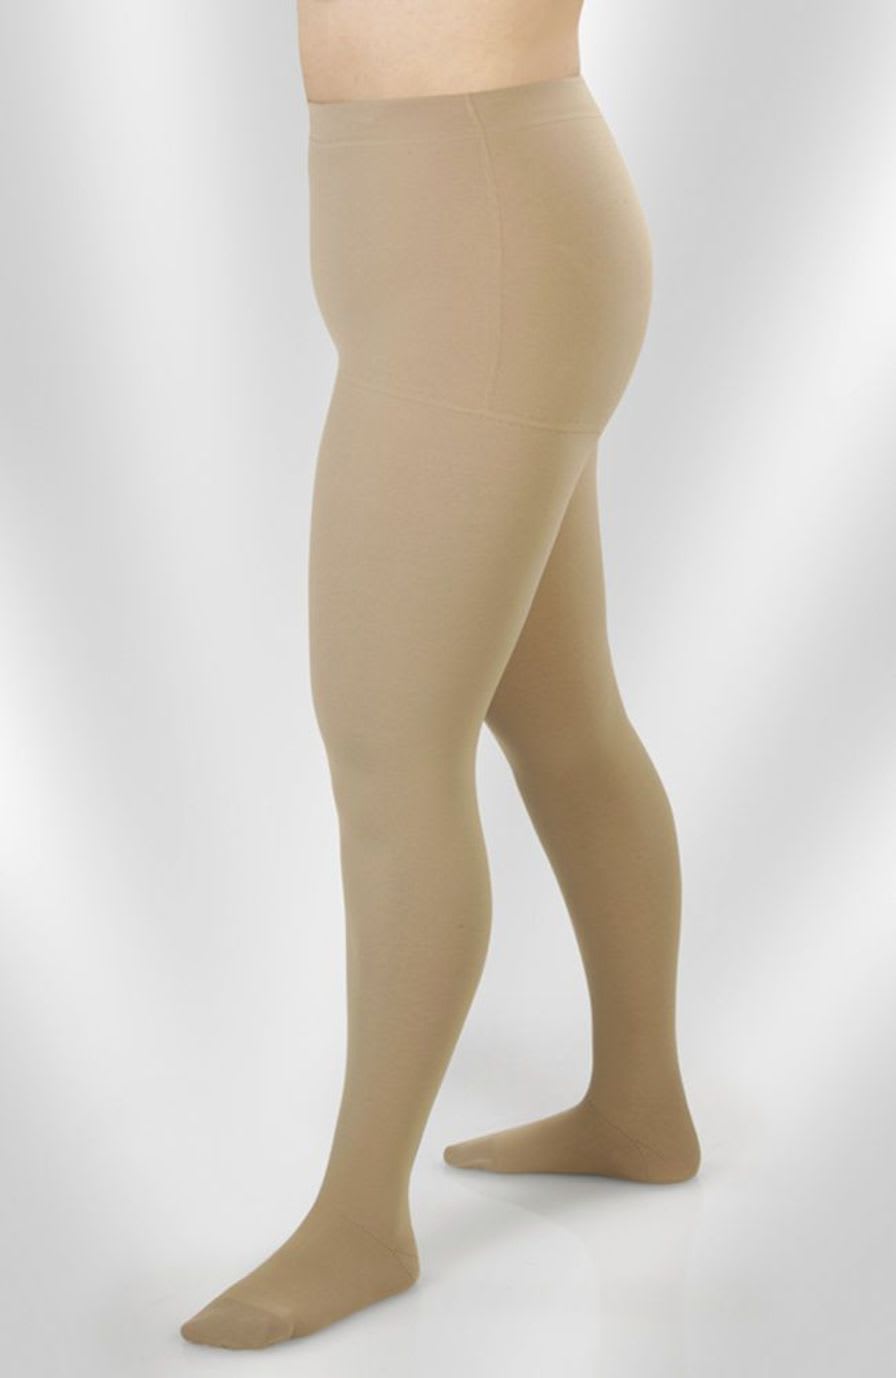 Pantyhose (orthopedic clothing) / compression / woman Juzo® Expert Juzo